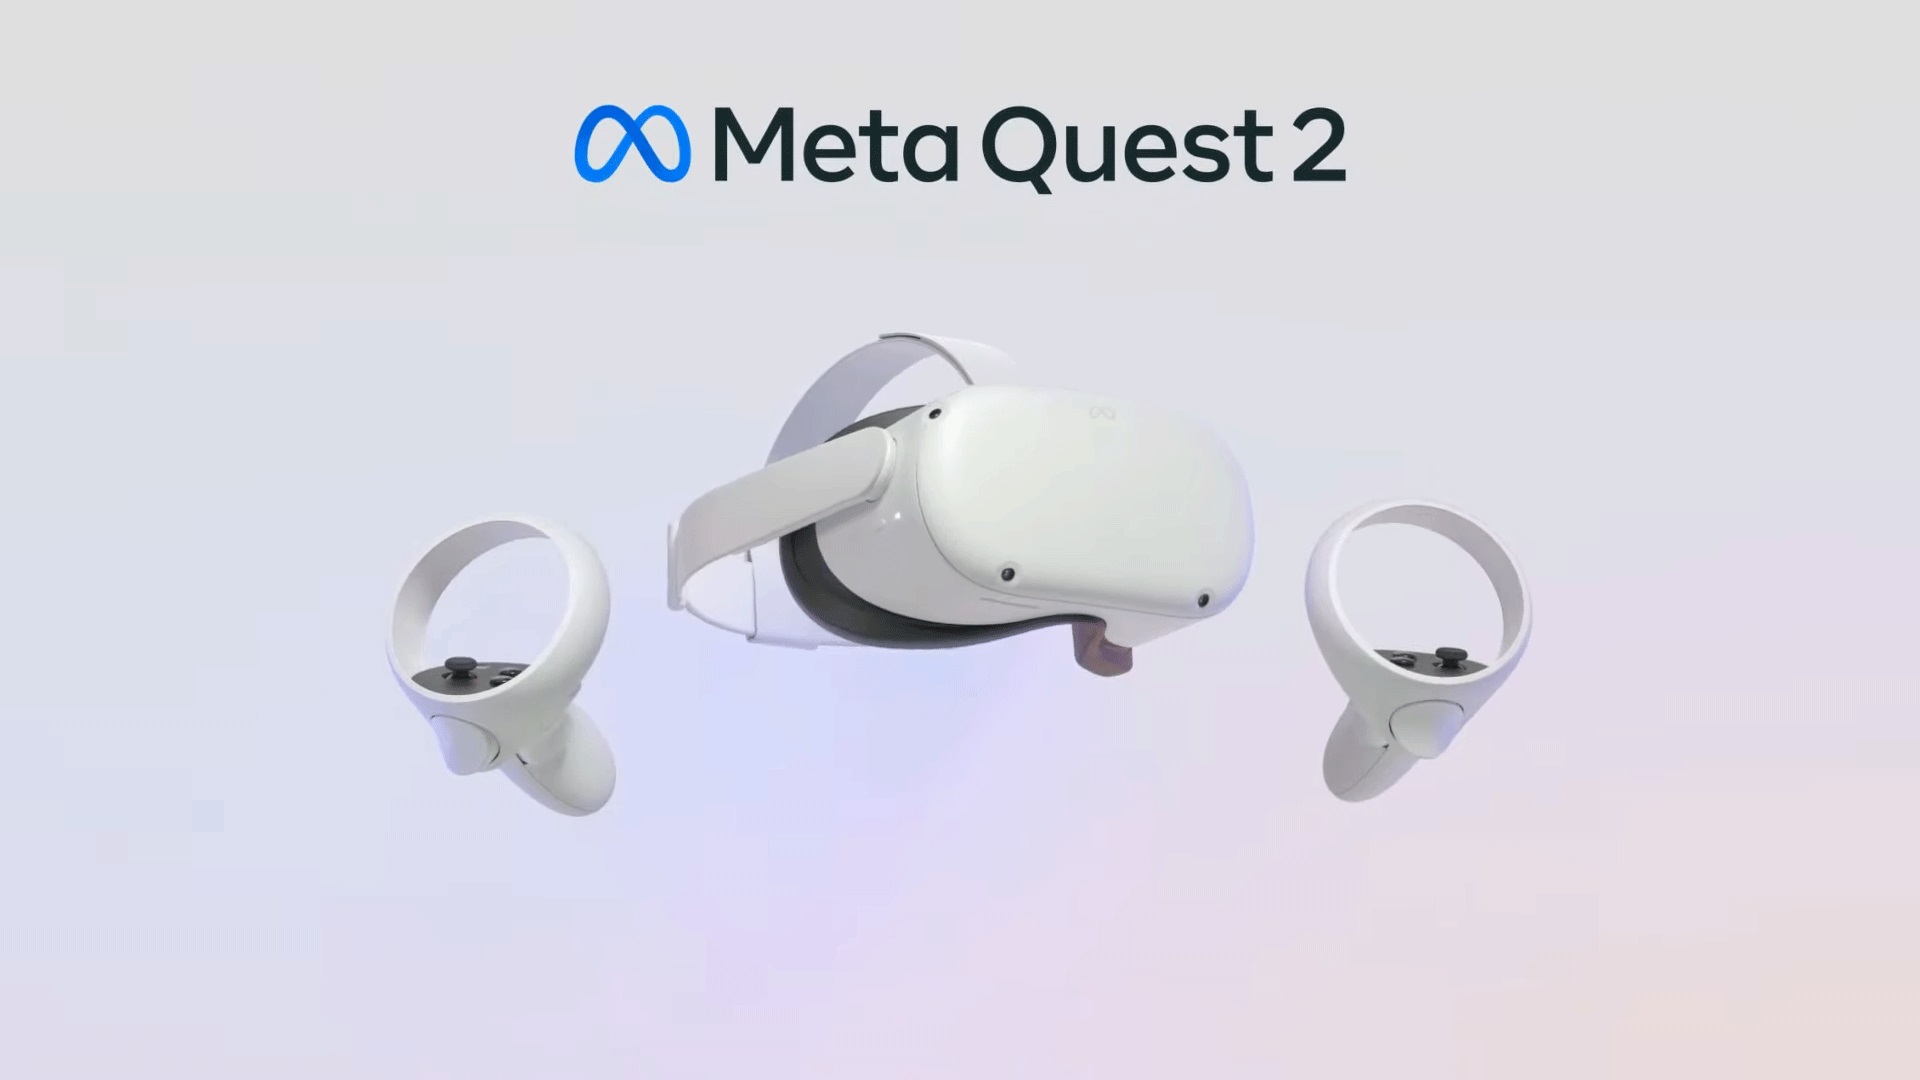 Meta Quest 2 ทำยอดขายไปแล้วกว่า 14.8 ล้านชุดทั่วโลก